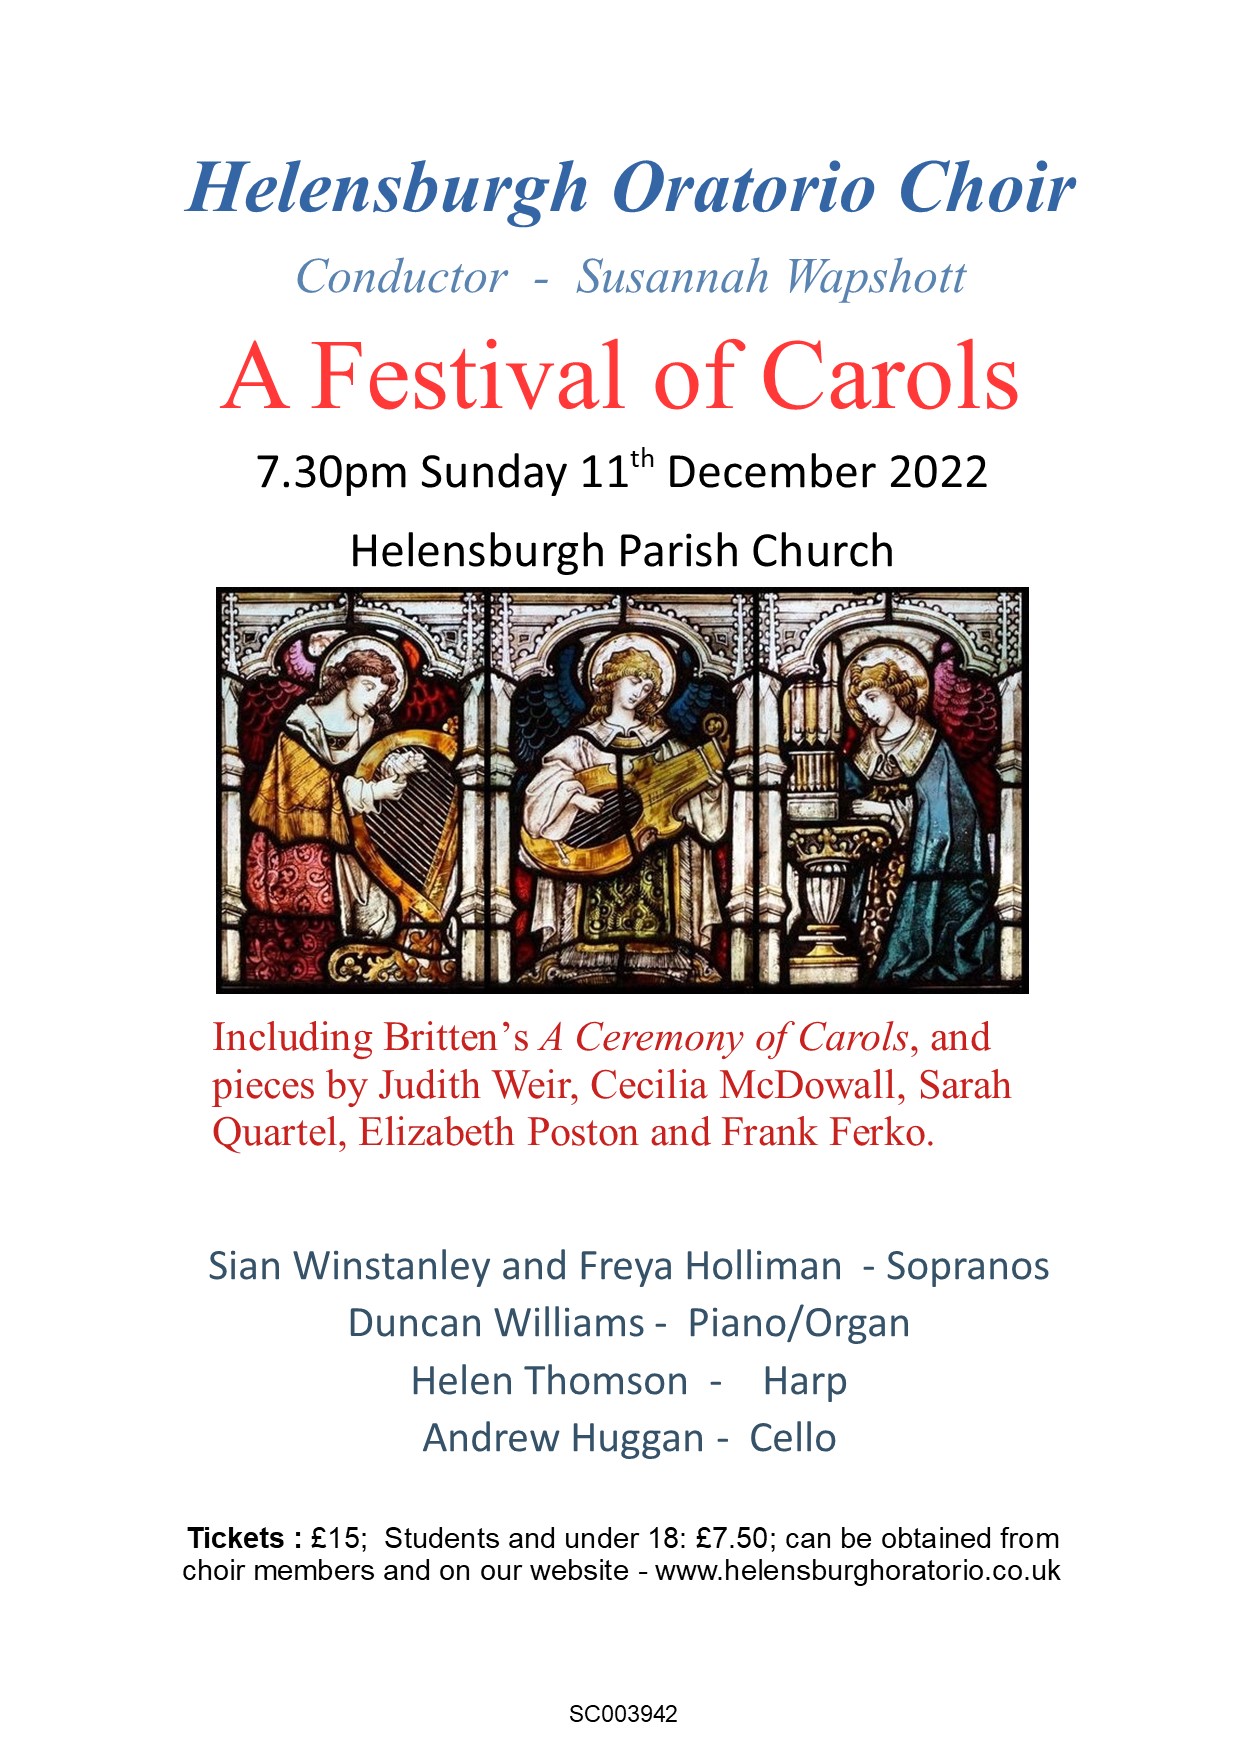  A Festival of Carols Concert